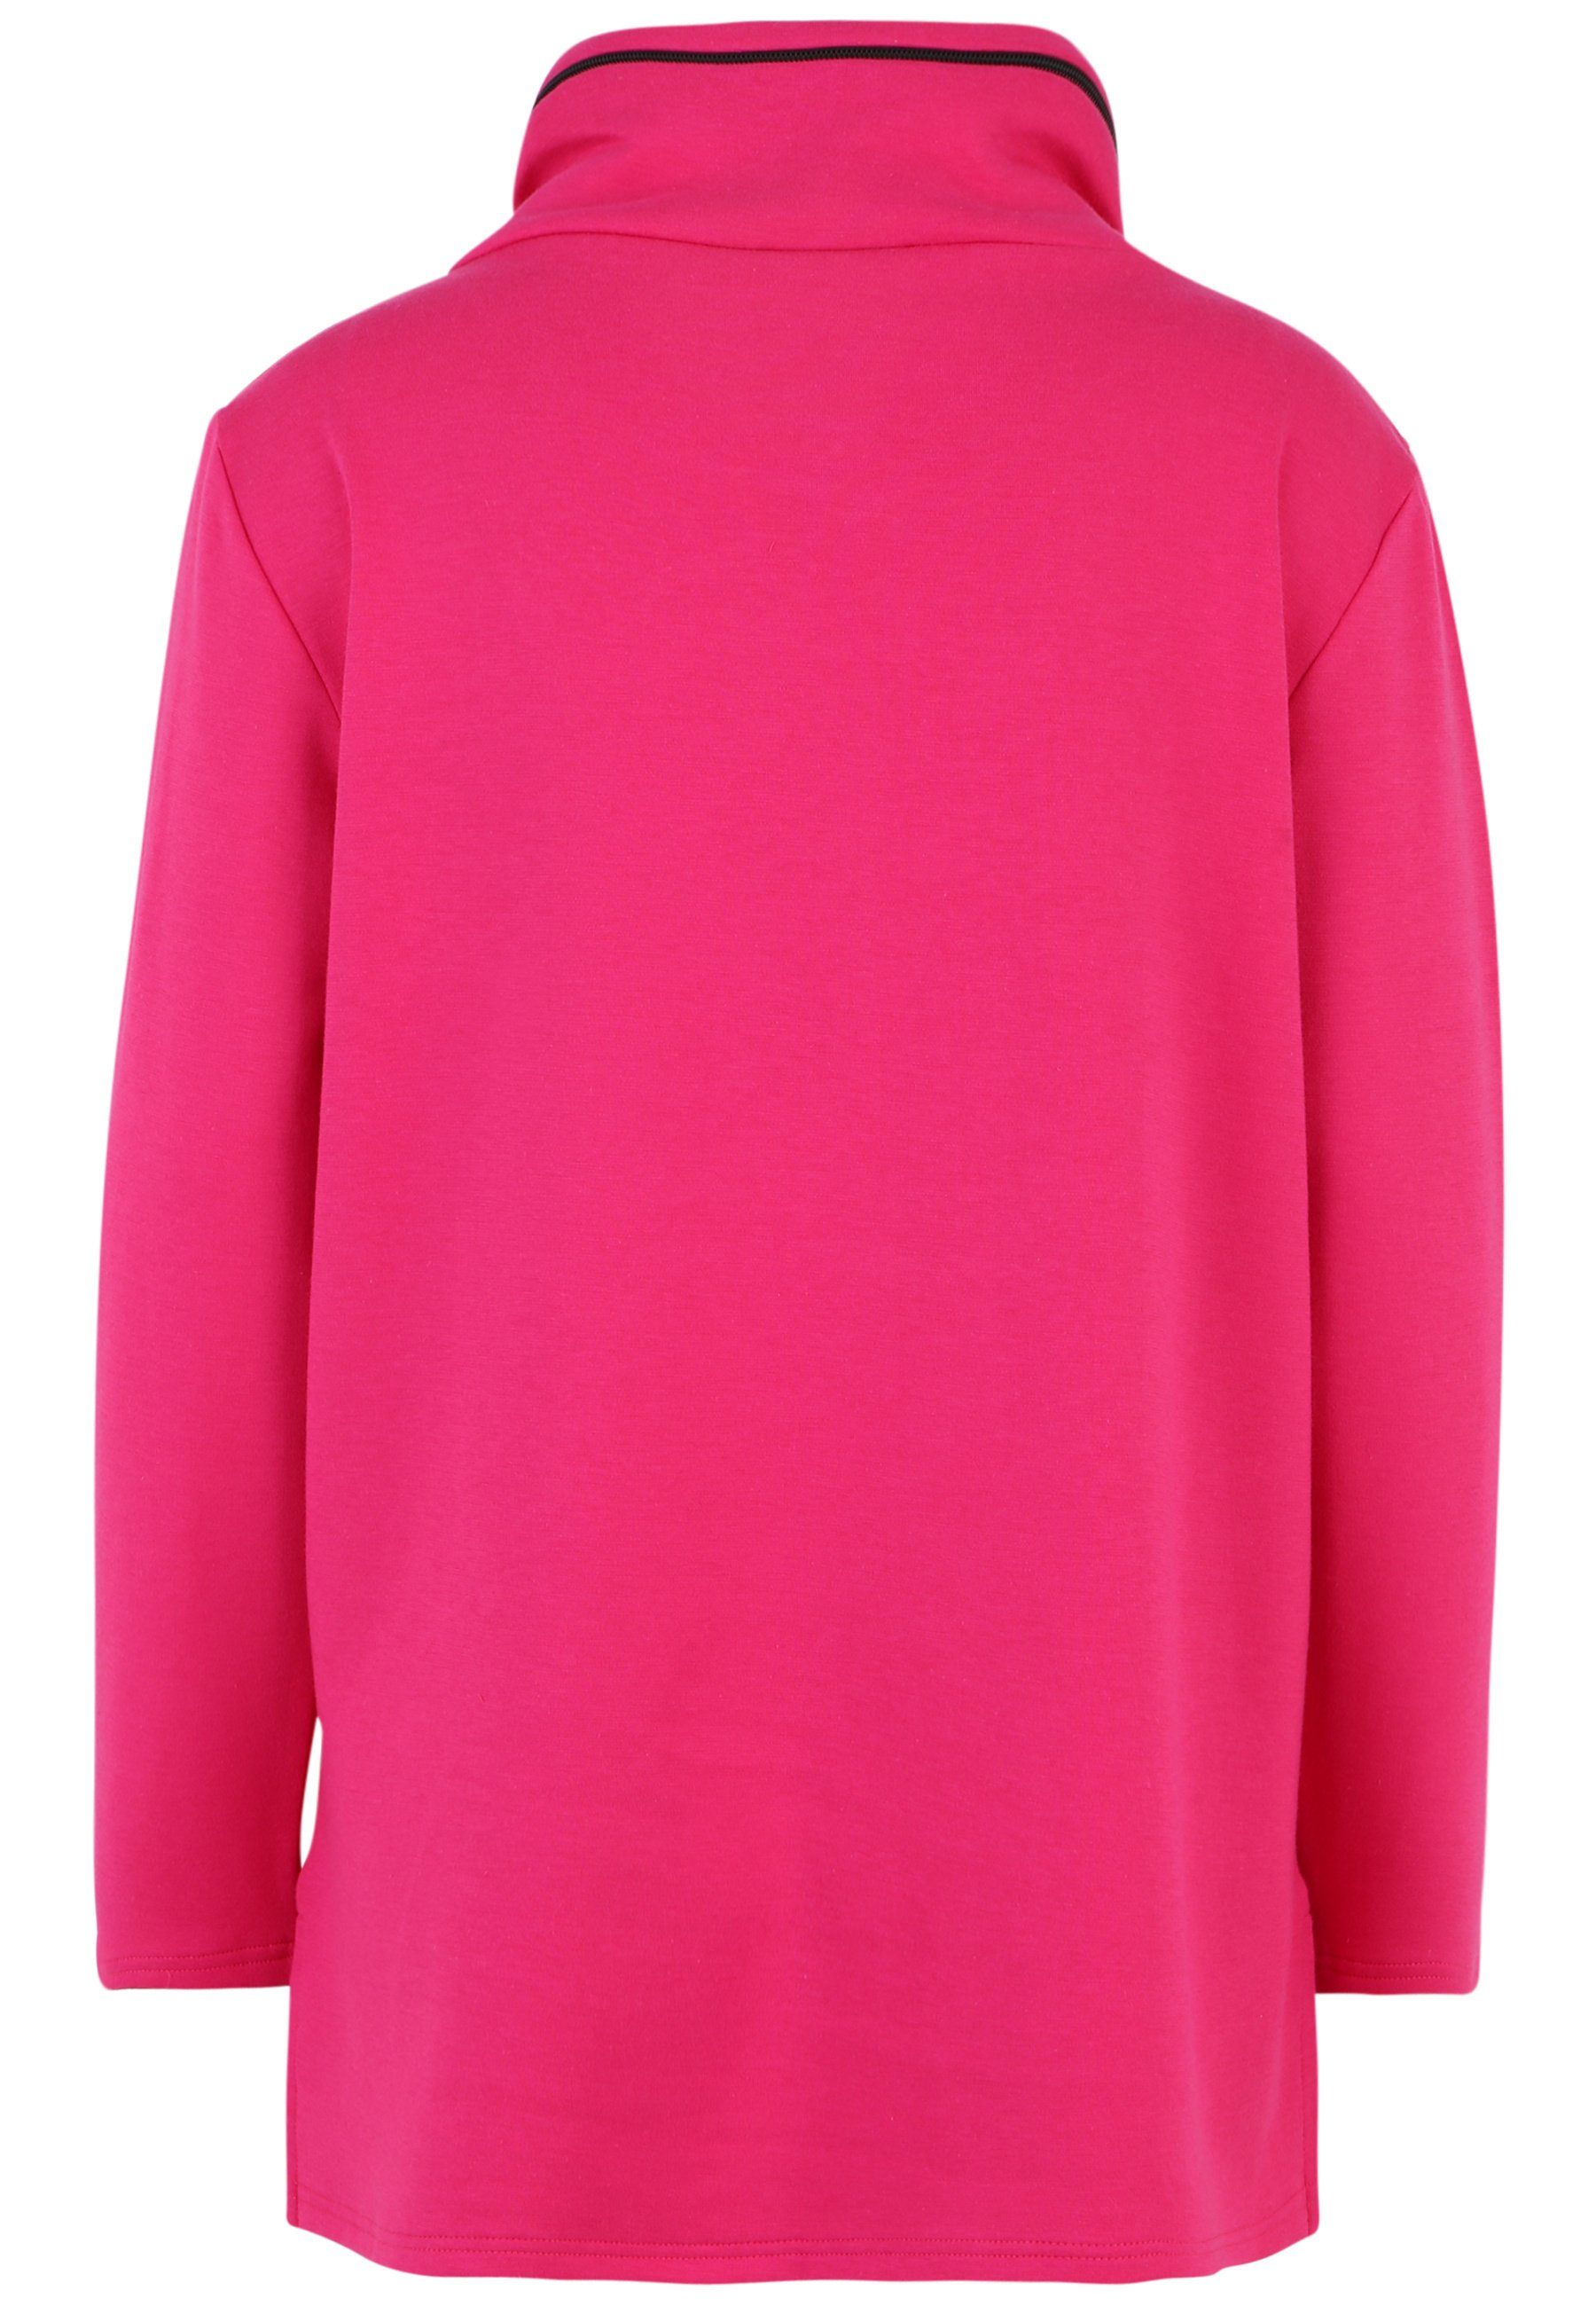 Doris Streich Longshirt Sweatshirt und mit Design Nylon-Tasche PINK modernem Motivprint mit